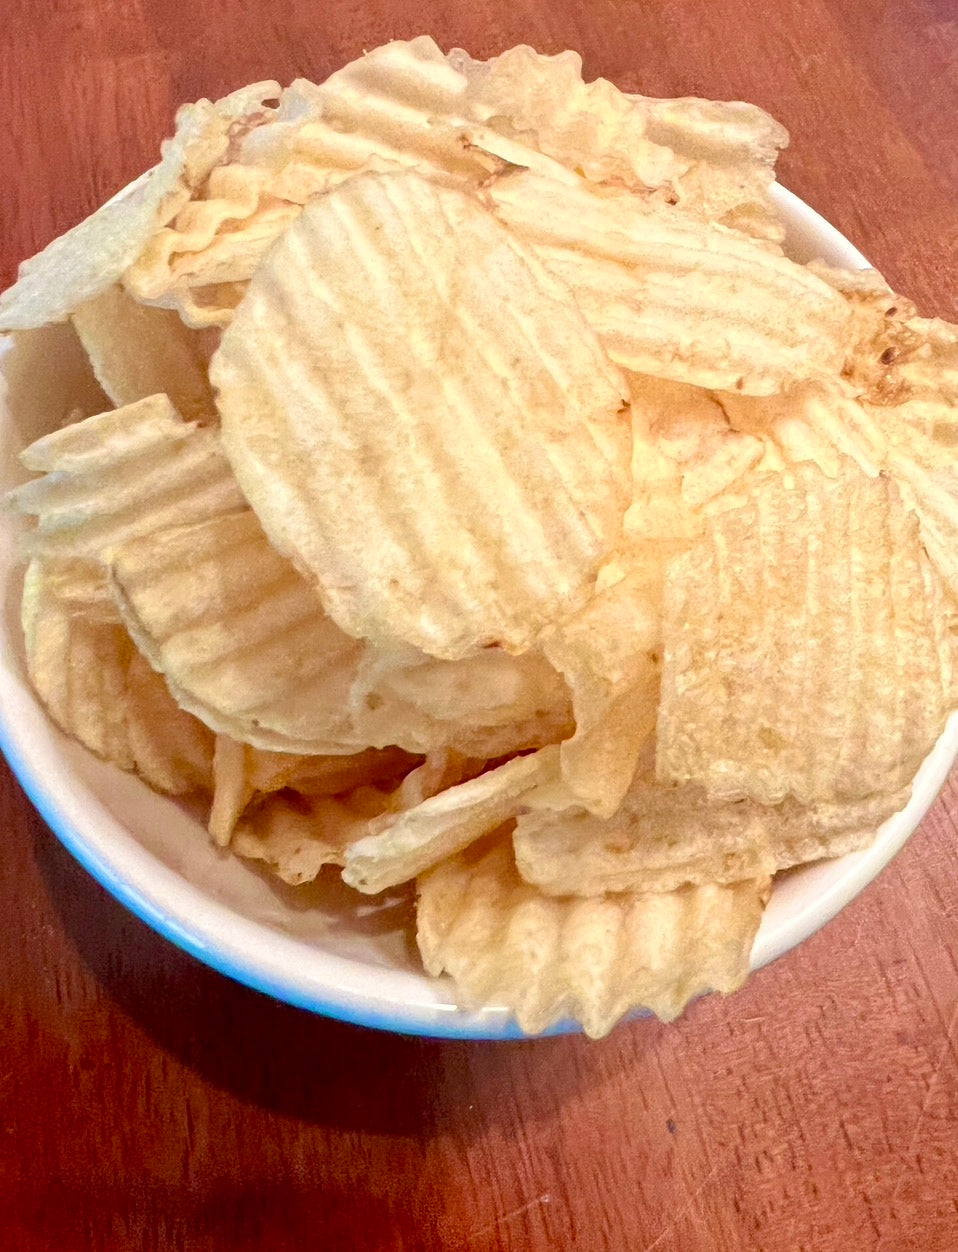 Dick's Potato Chips Salty - 3 Bags (2.75 oz. per bag)